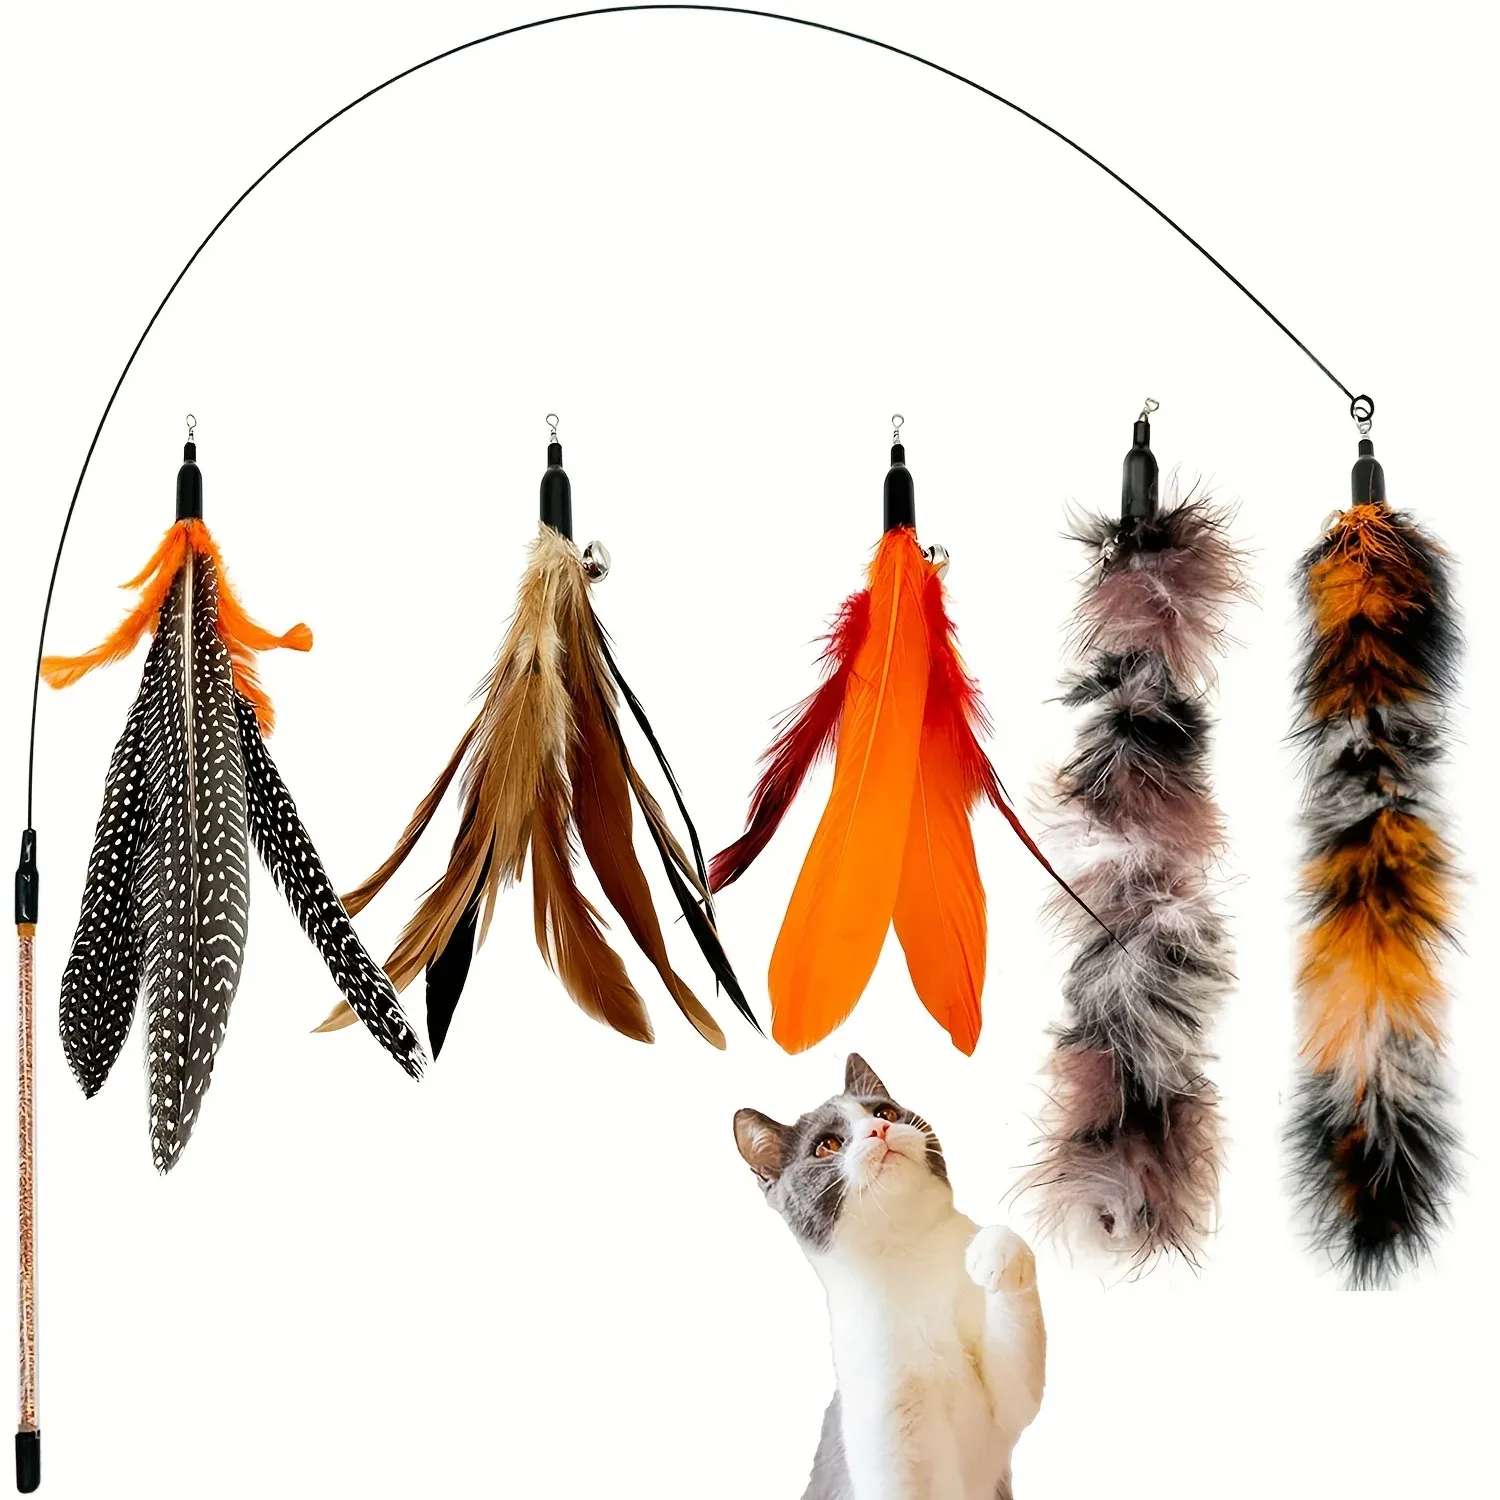 Toys 6 pcs jouet chat plume remplacement de chat de chat recharge des plumes d'oiseau naturel, plumes de remplacement jouet pour chats pour chats intérieurs